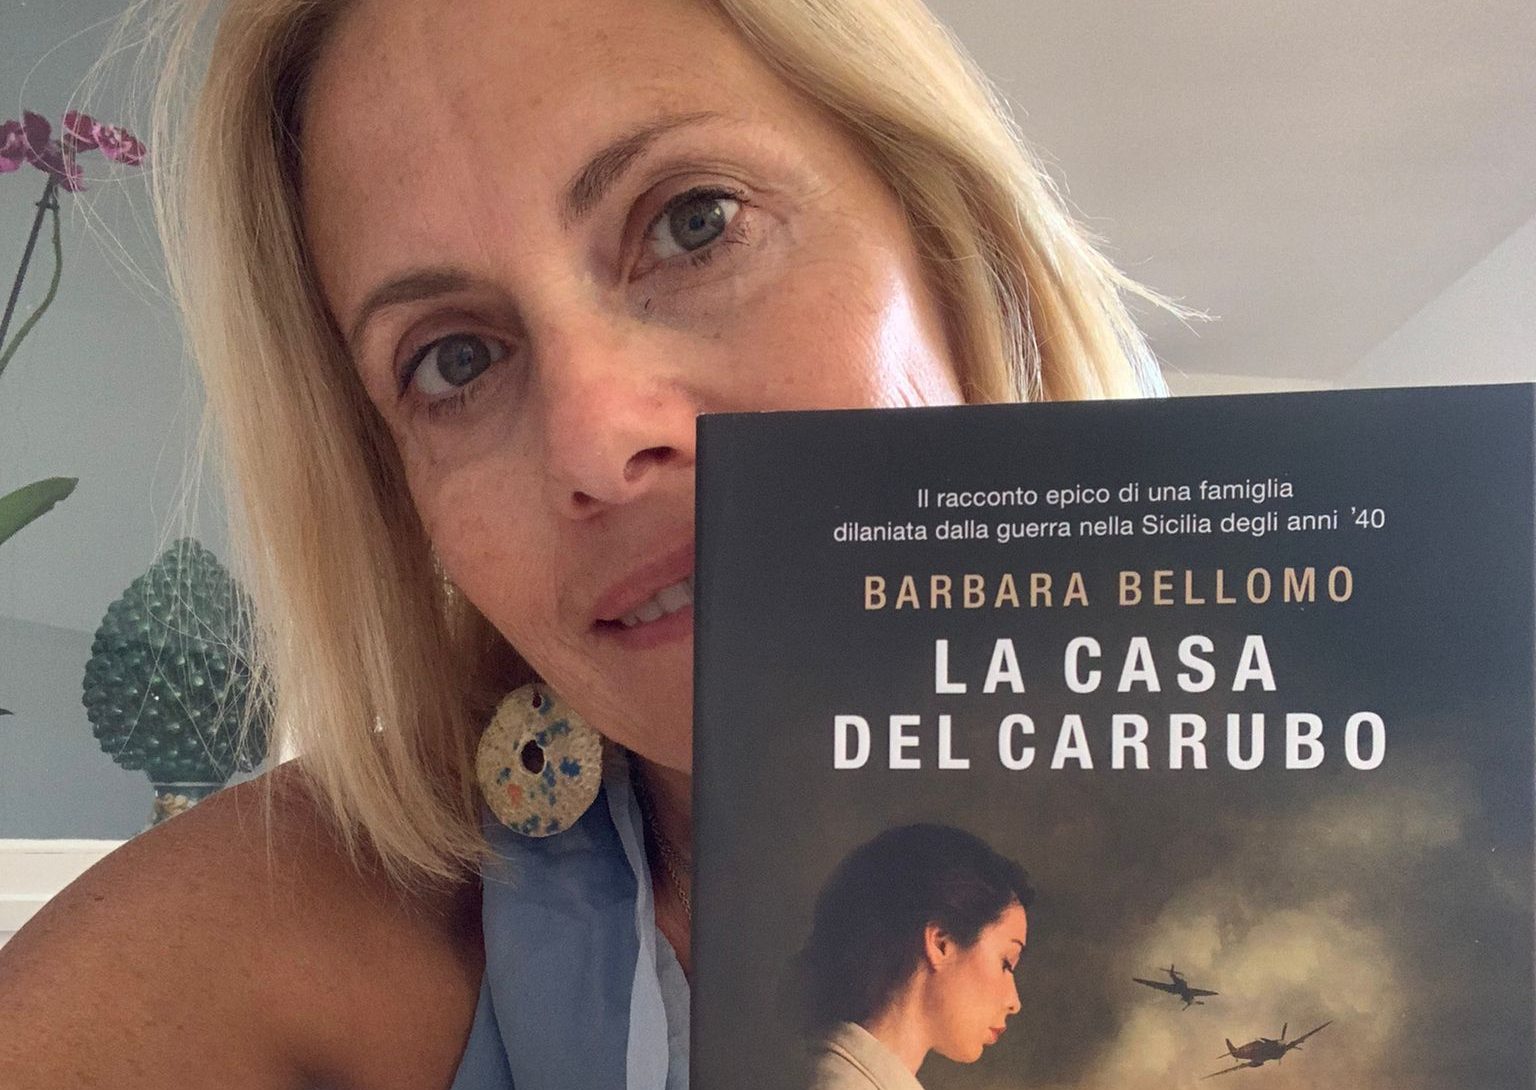 Barbara Bellomo e l’ombra del carrubo che salva dalla guerra: «Emozioni dalle radici della storia»